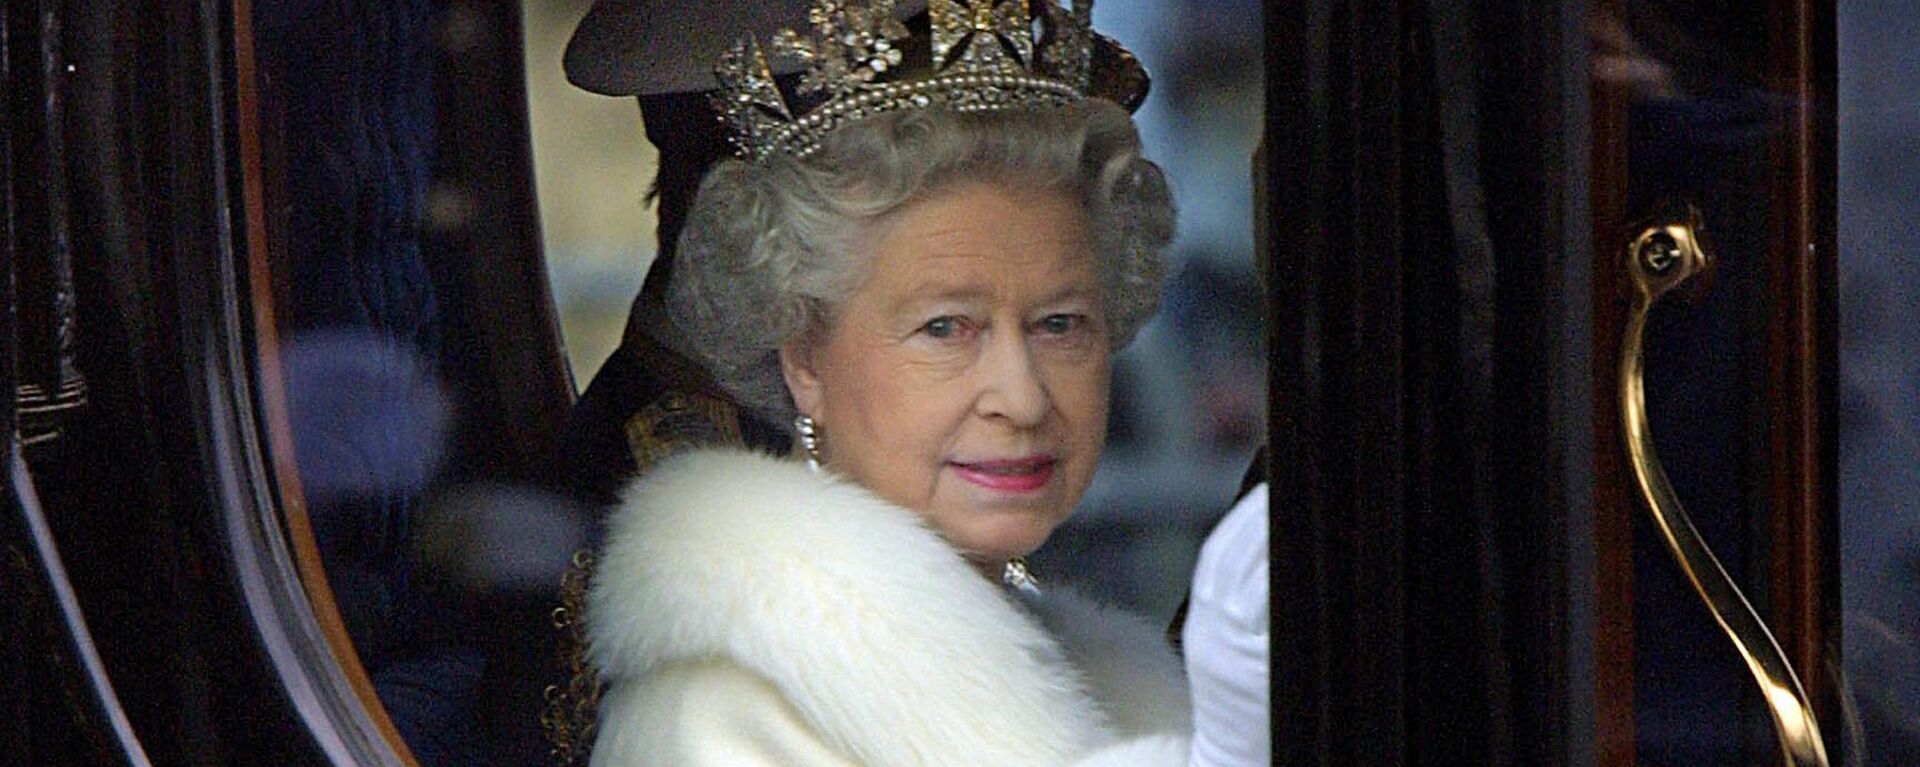 Королева Елизавета II приветствует толпу из своей конной повозки, когда она покидает Букингемский дворец на открытие парламента в Лондоне, 6 декабря 2000 года - Sputnik Молдова, 1920, 09.09.2022